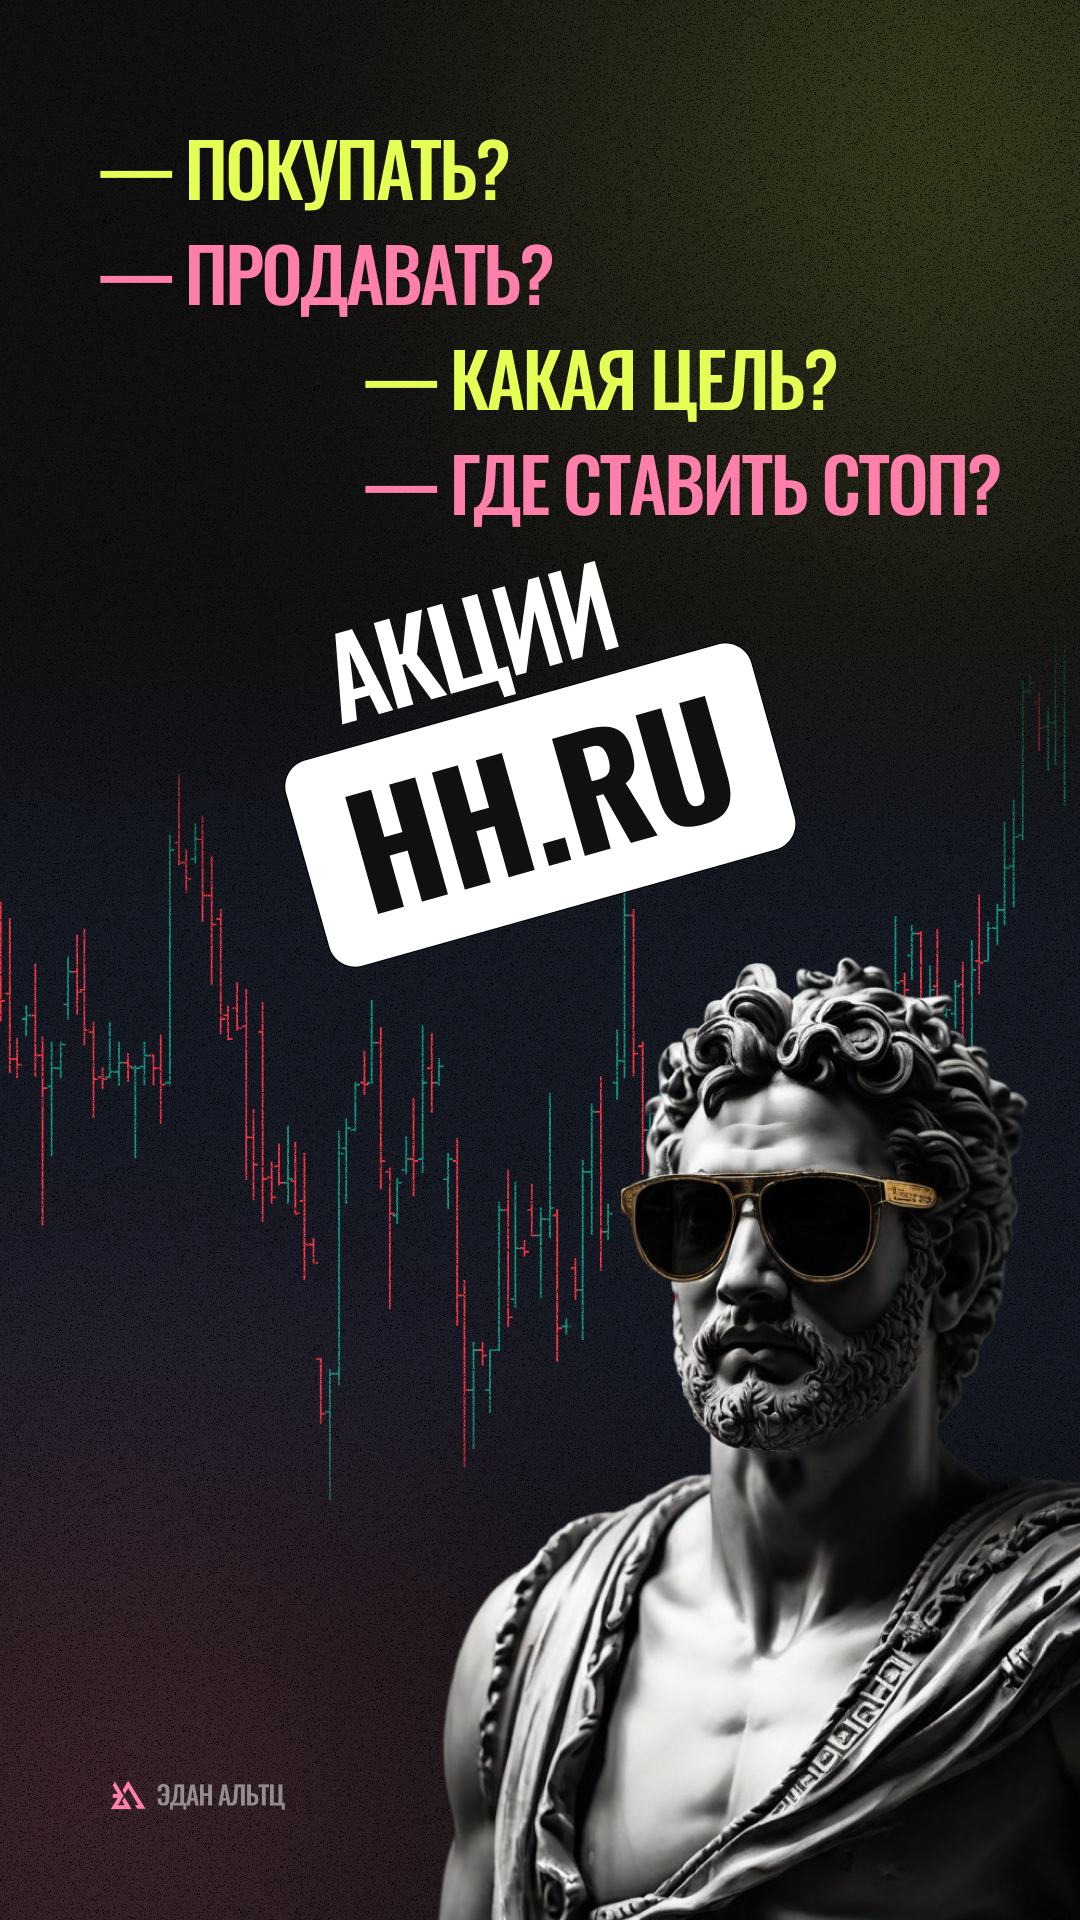 🔥 Акции HH.ru $HHRU — идея \ цели \ стопы \ обзор